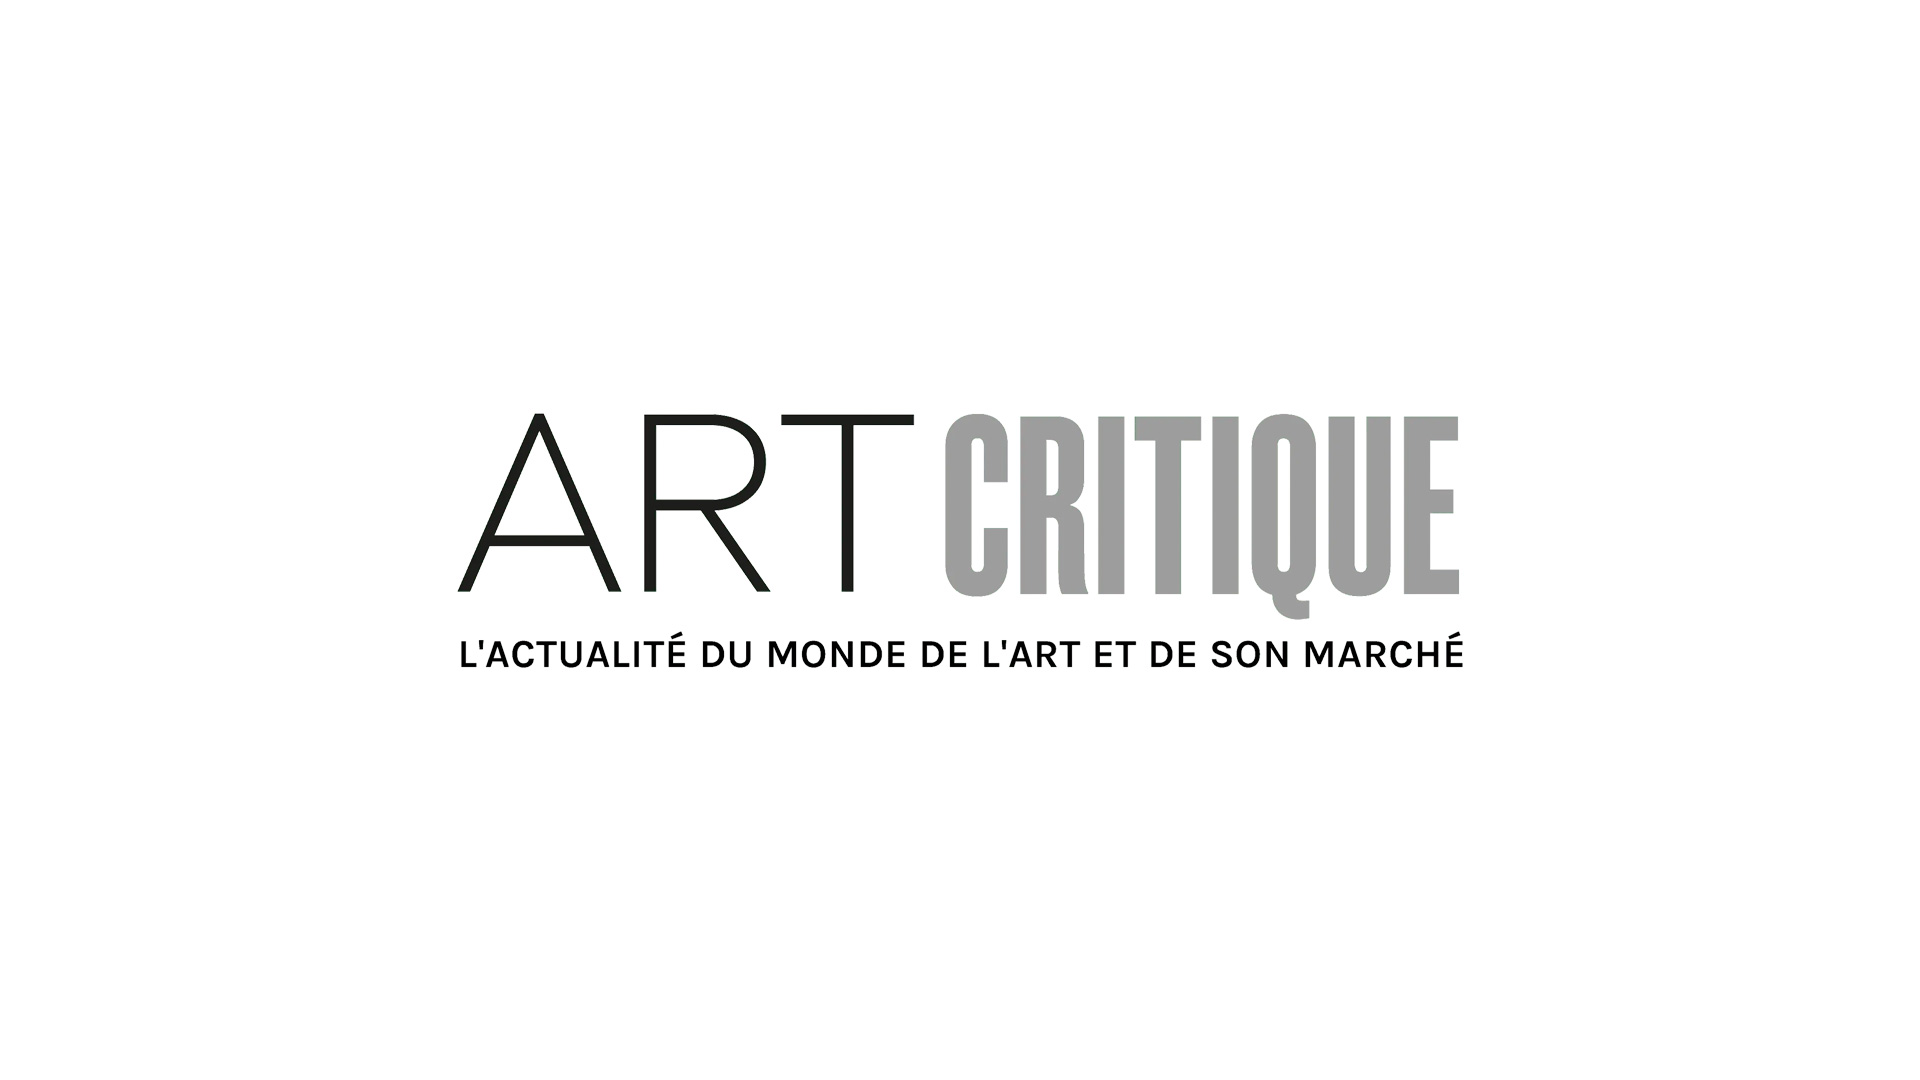 « Le Petit Nicolas » honoré à la Fondation Louis Vuitton